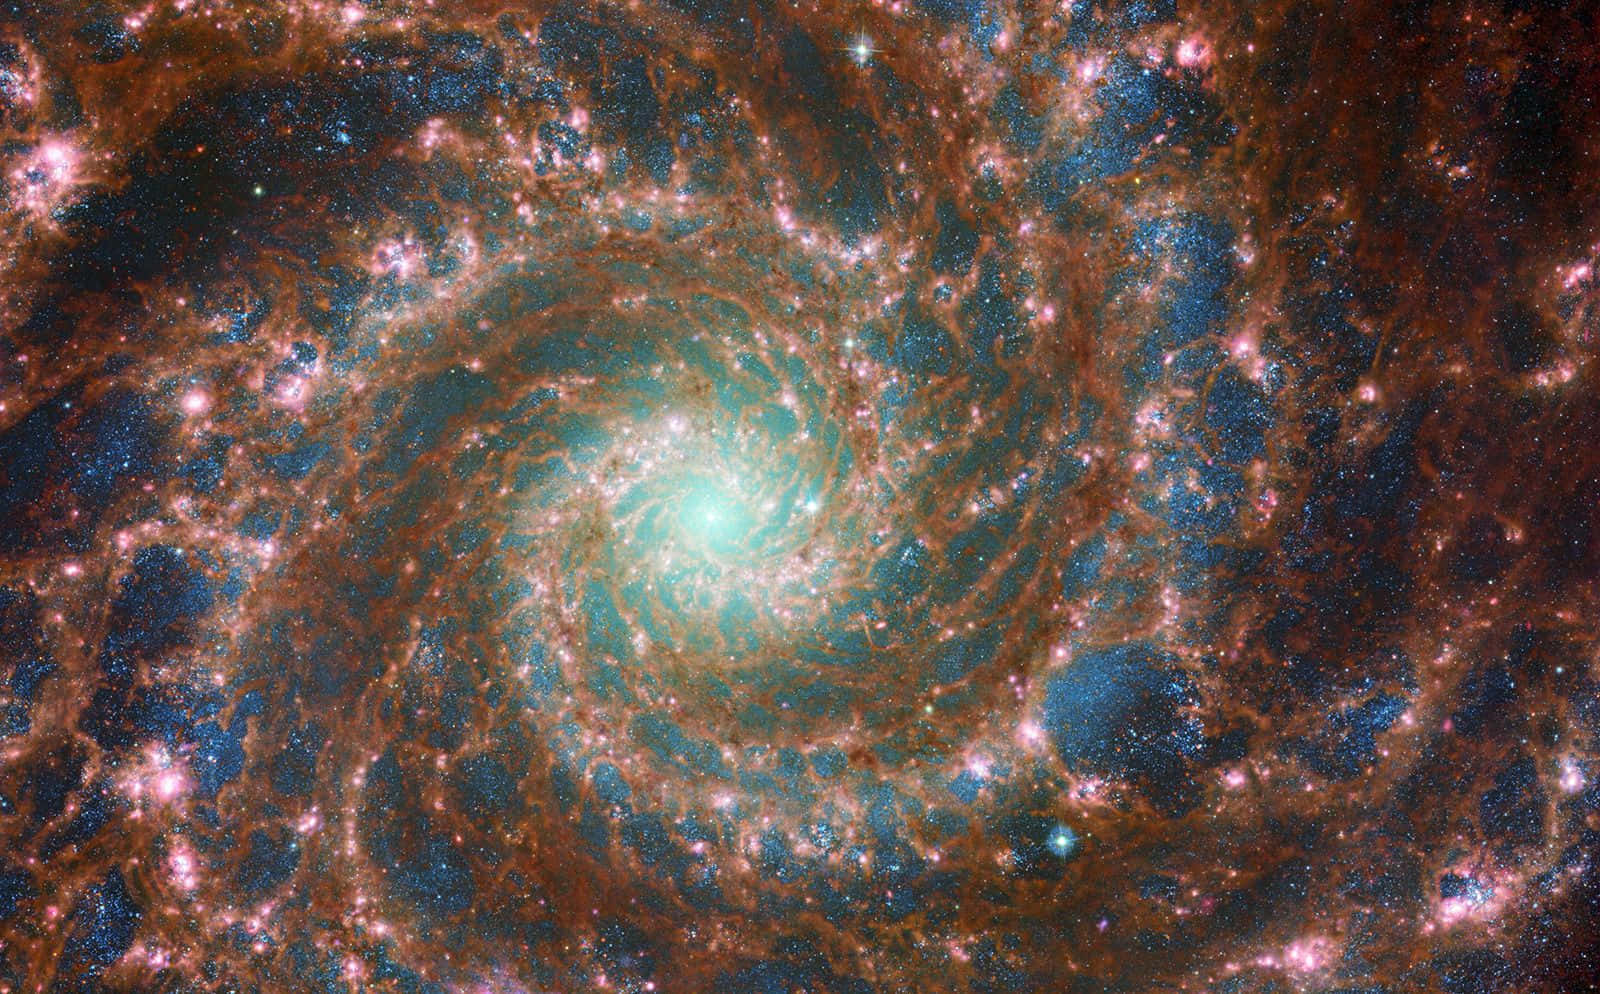 Beautiful spiral galaxy from NASA